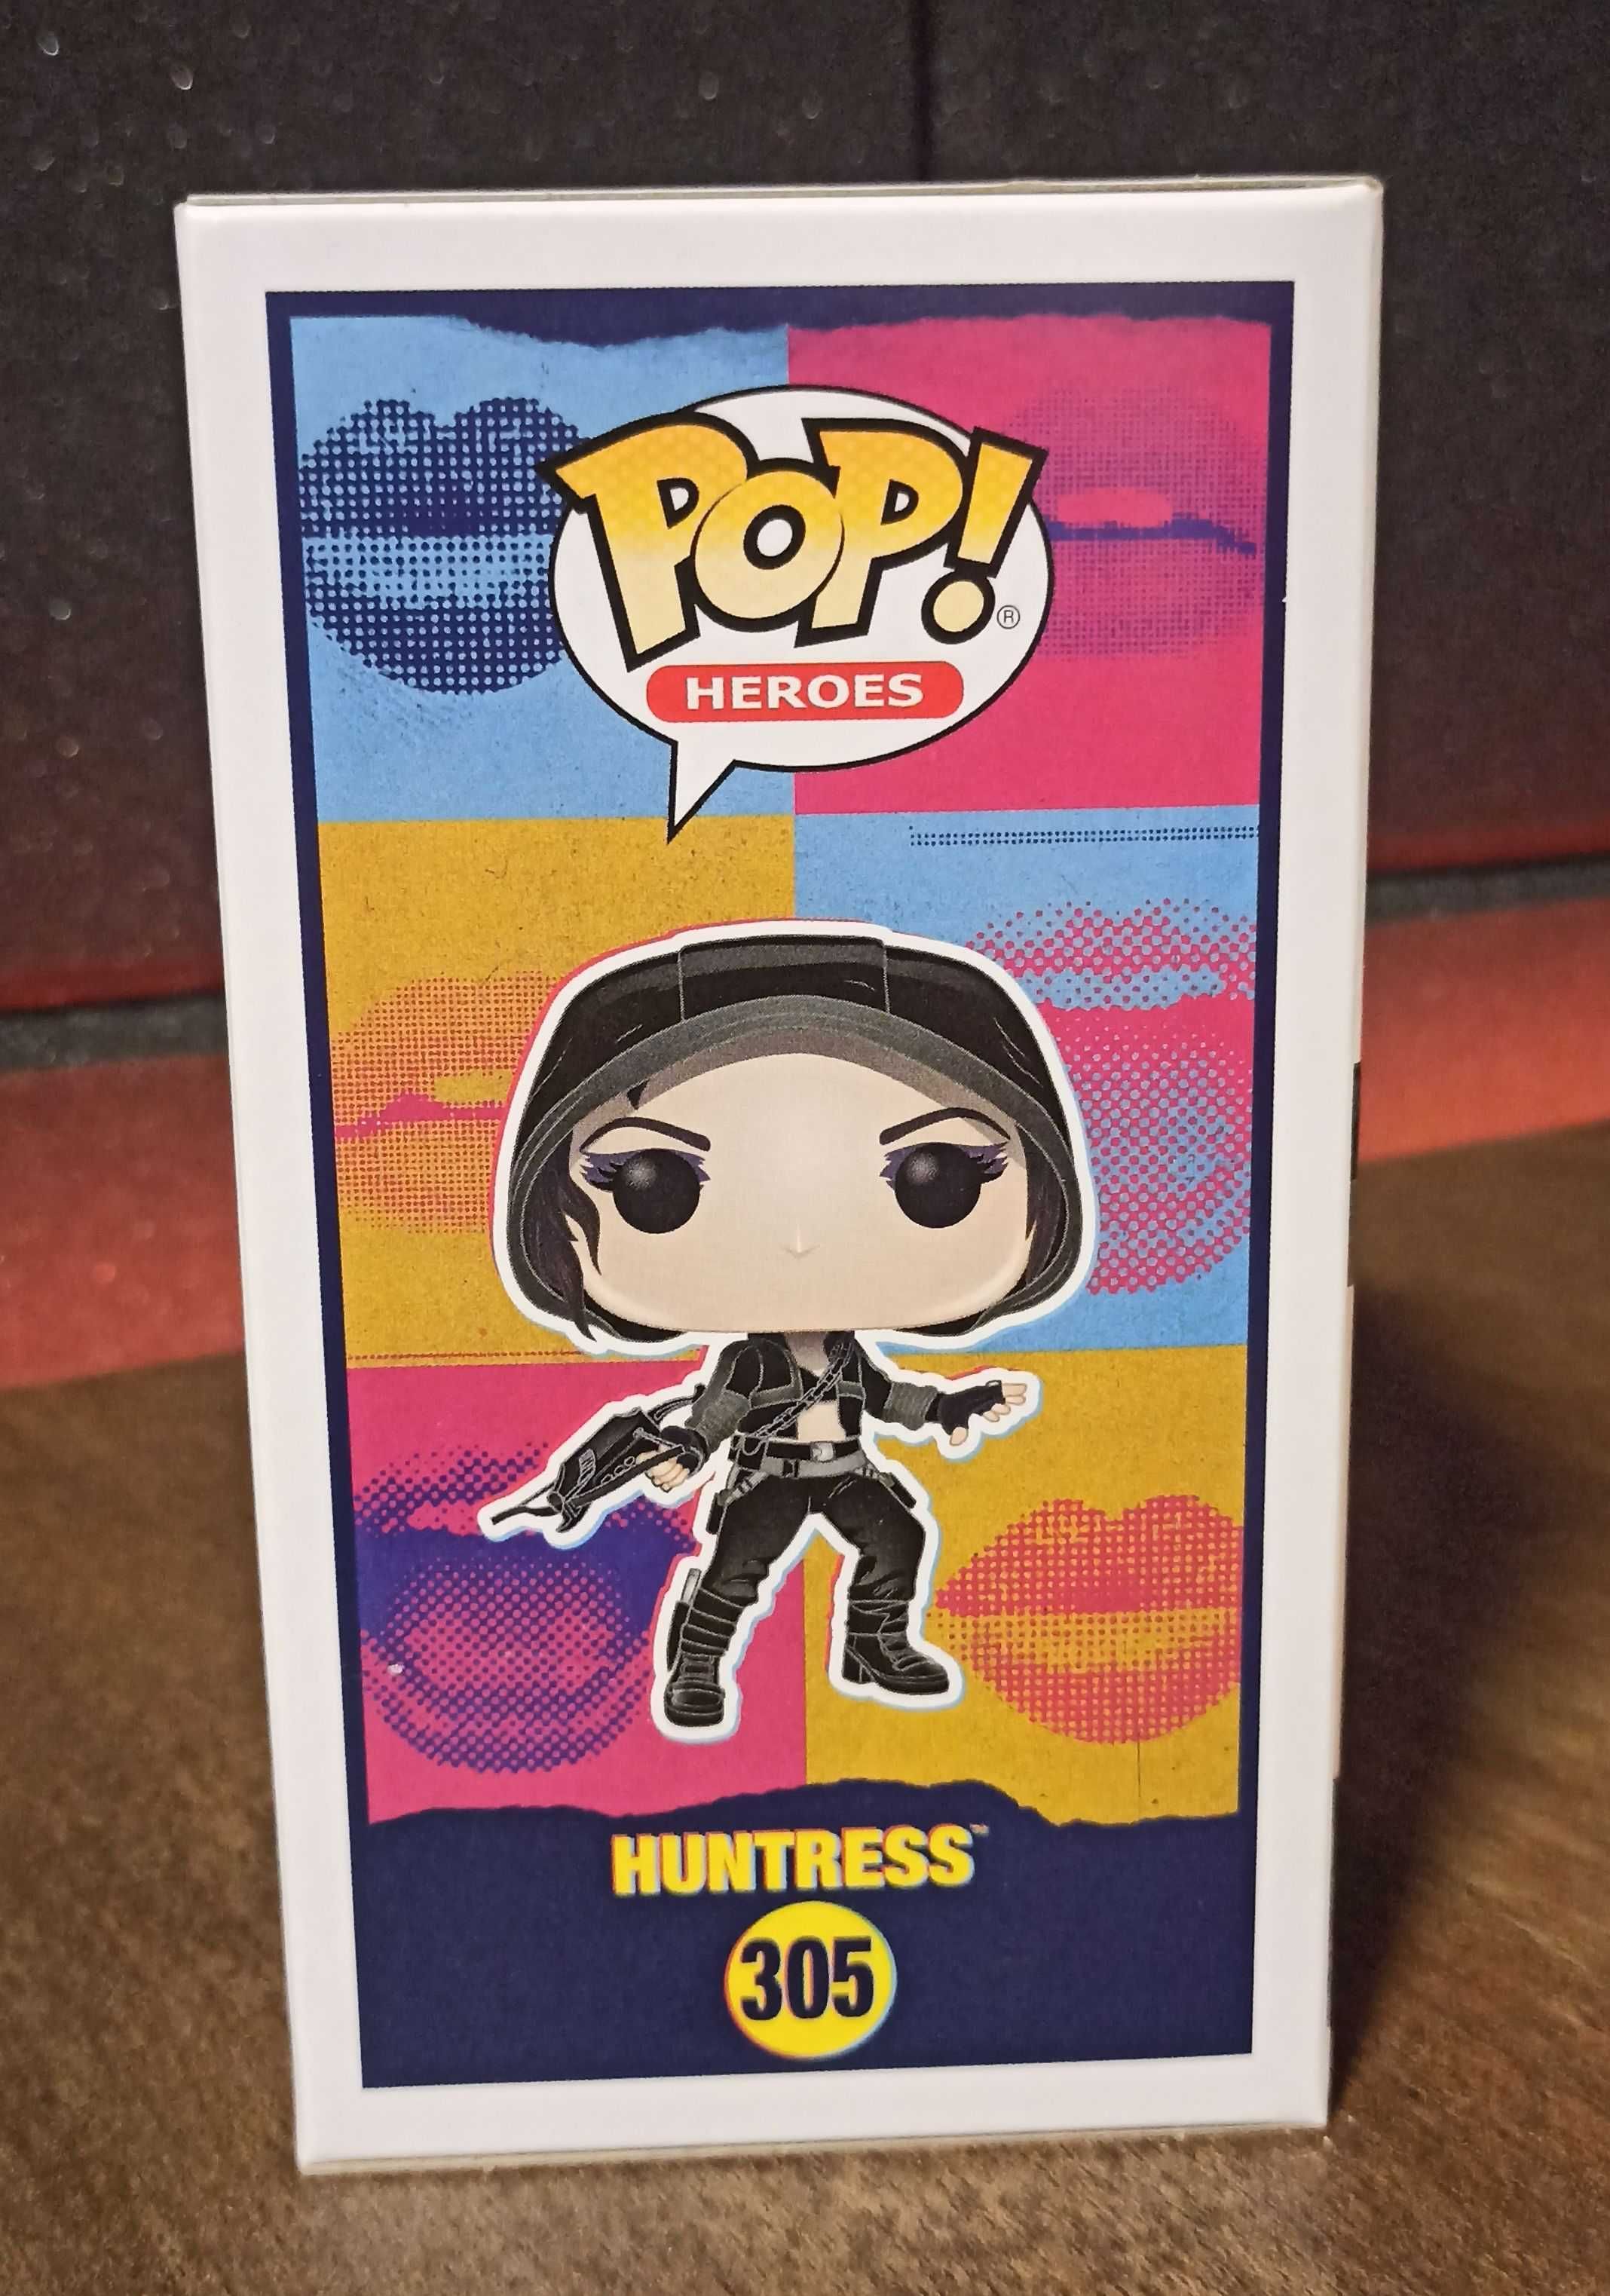 Figurka 305 - Huntress Brids of Prey Funko Pop!